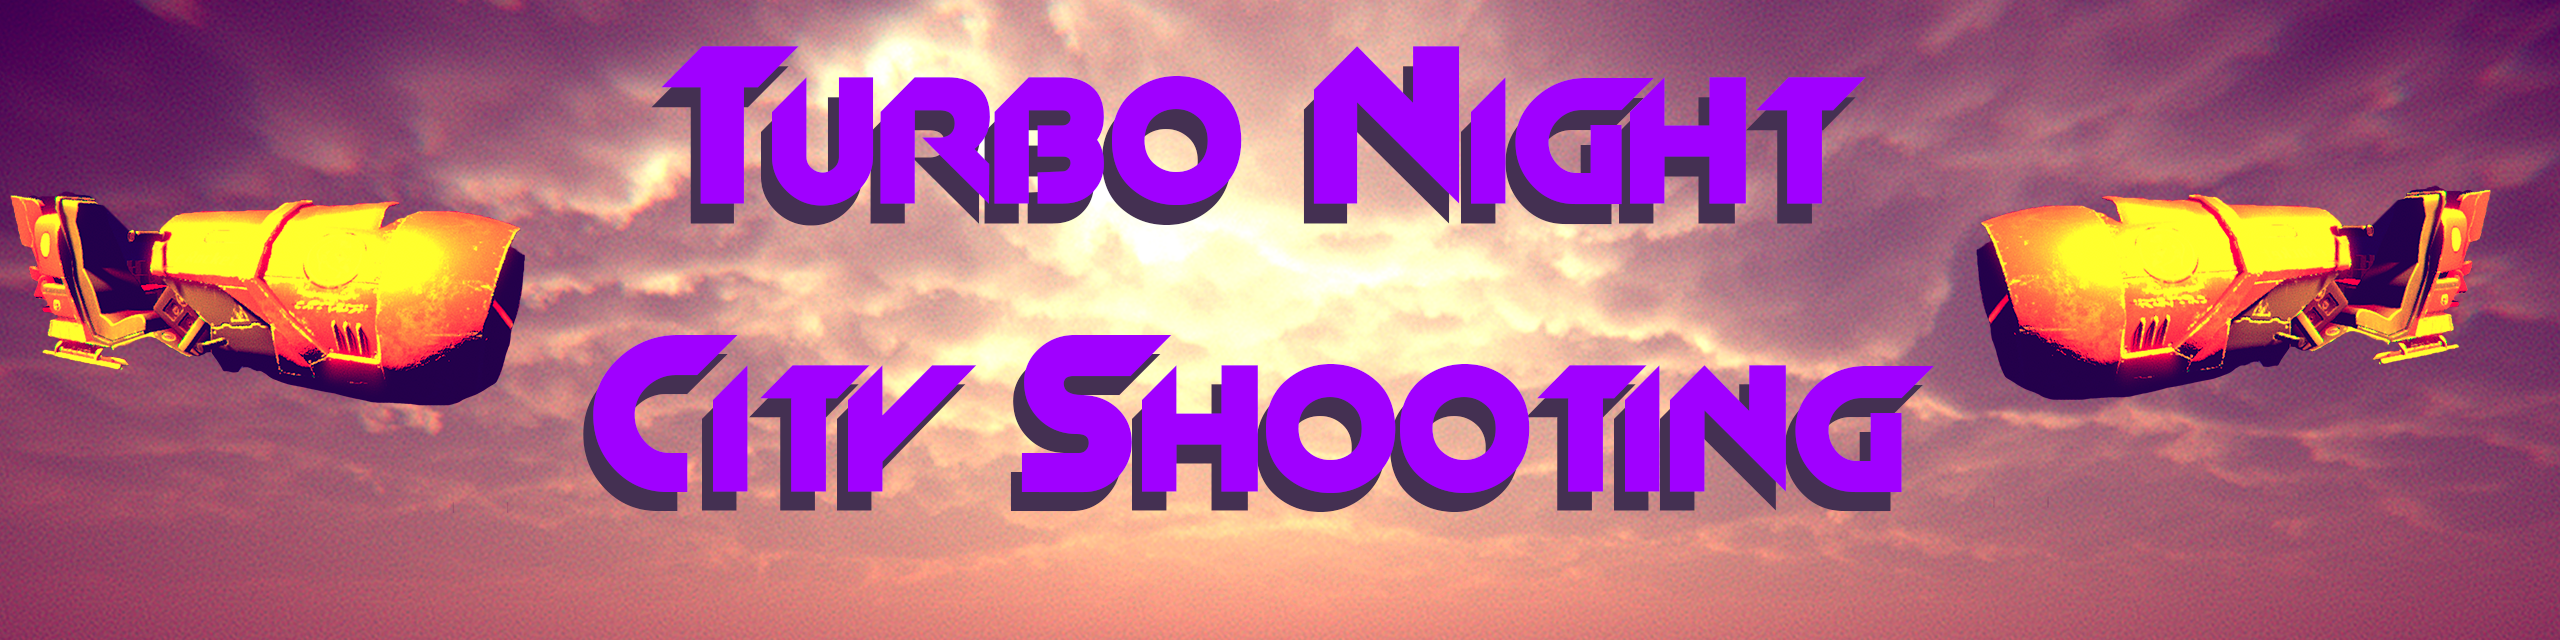 Turbo Night City Shooting